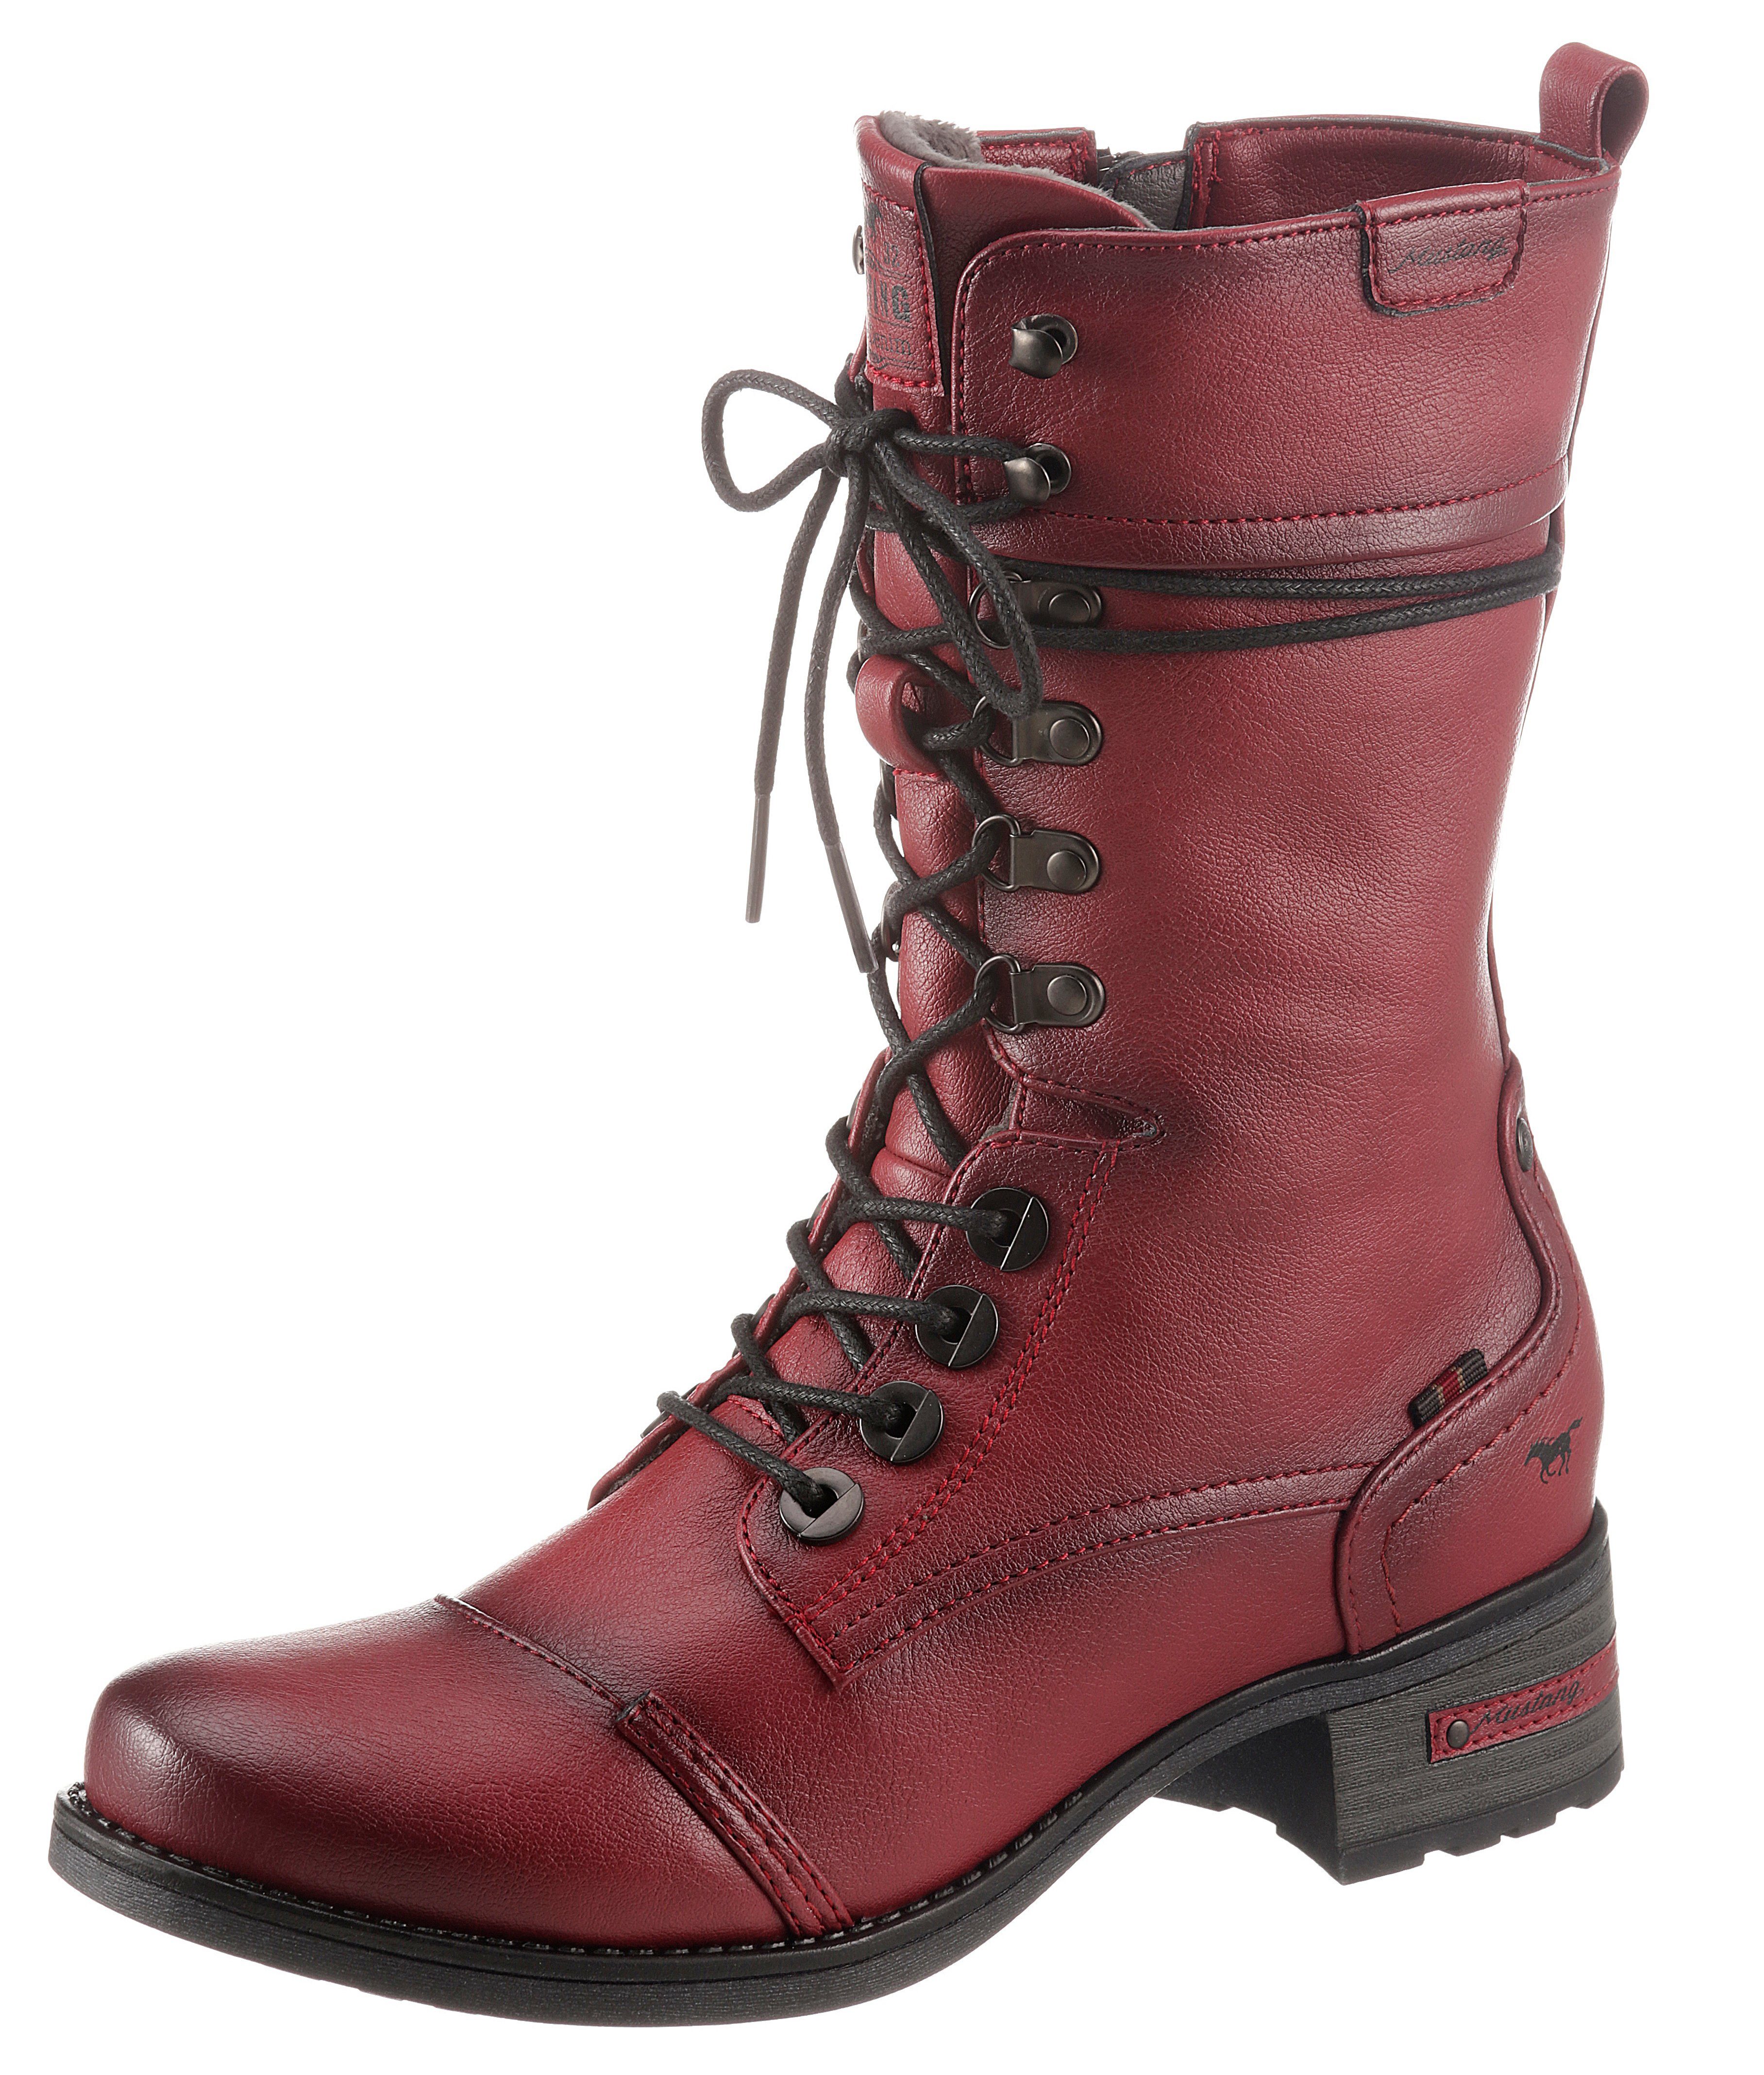 Rote Stiefel online kaufen | OTTO